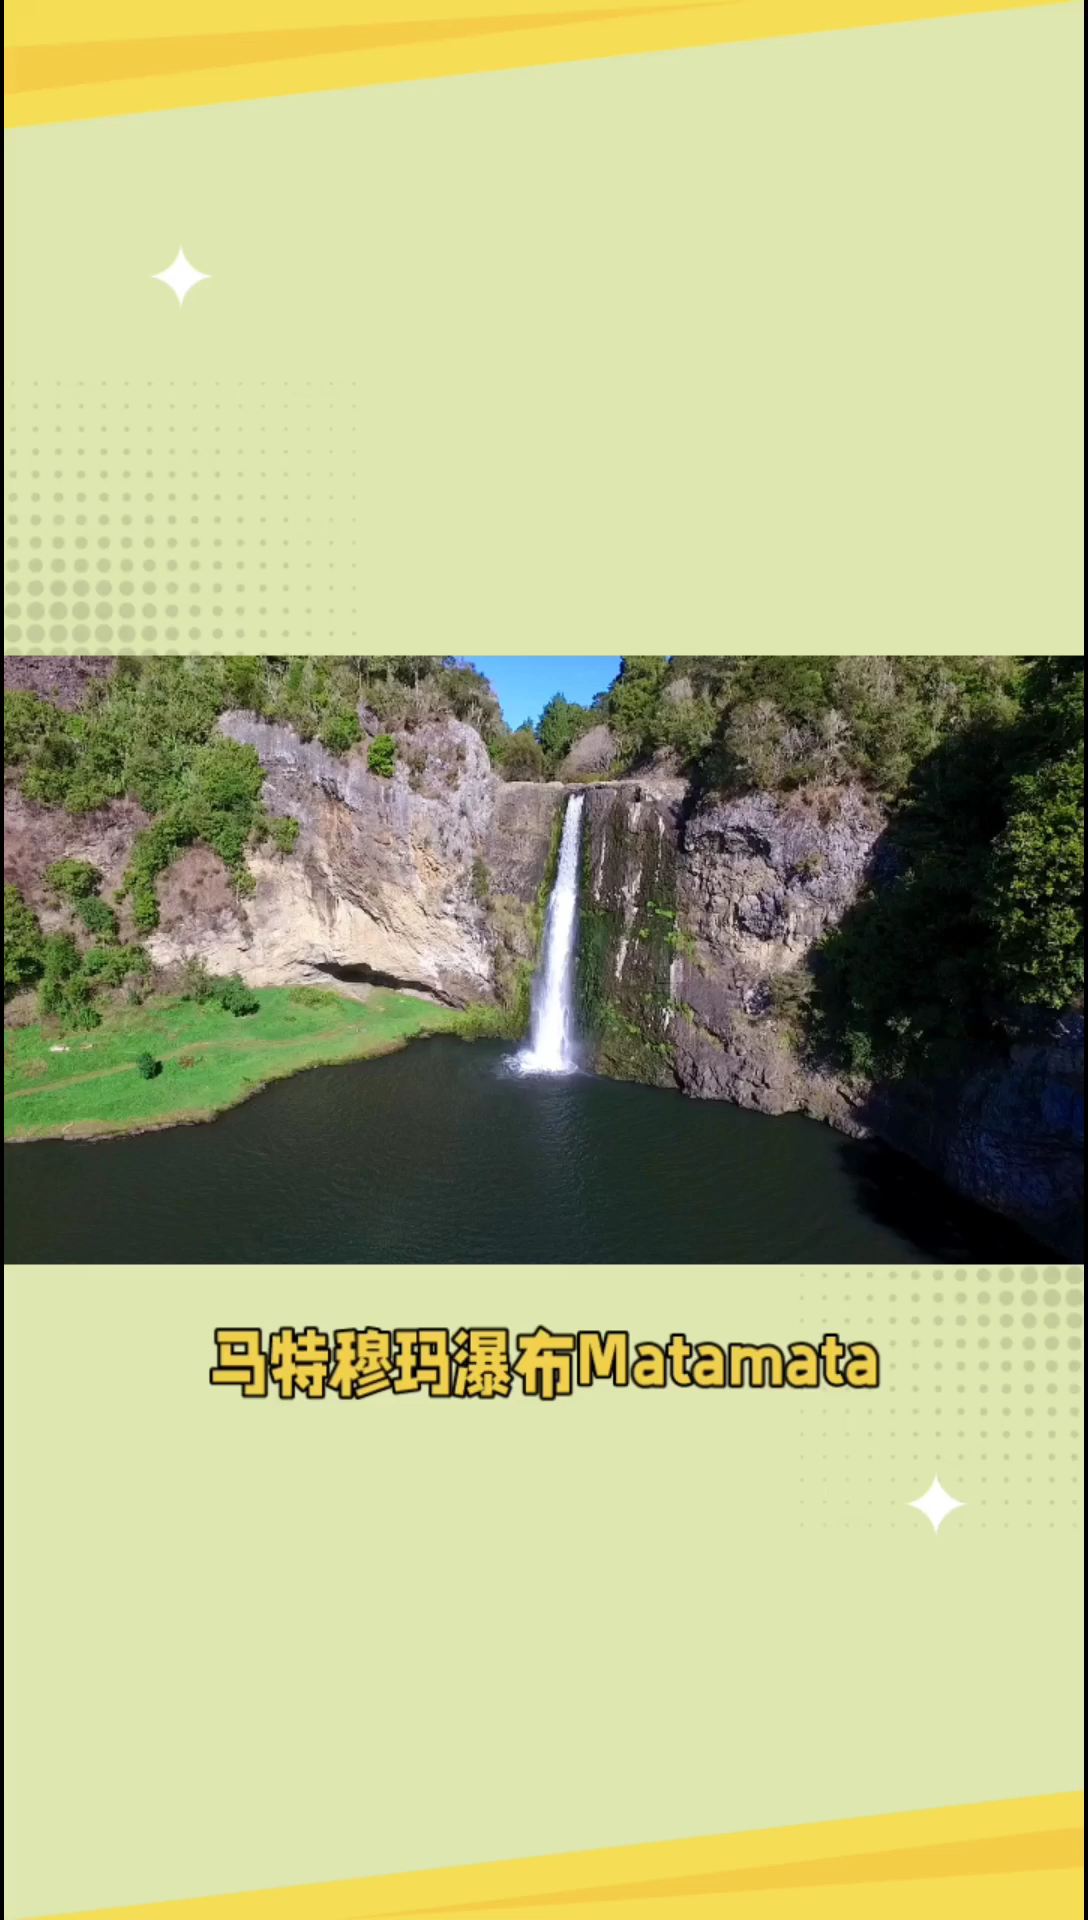 马特穆玛瀑布，美丽自然景色的代表